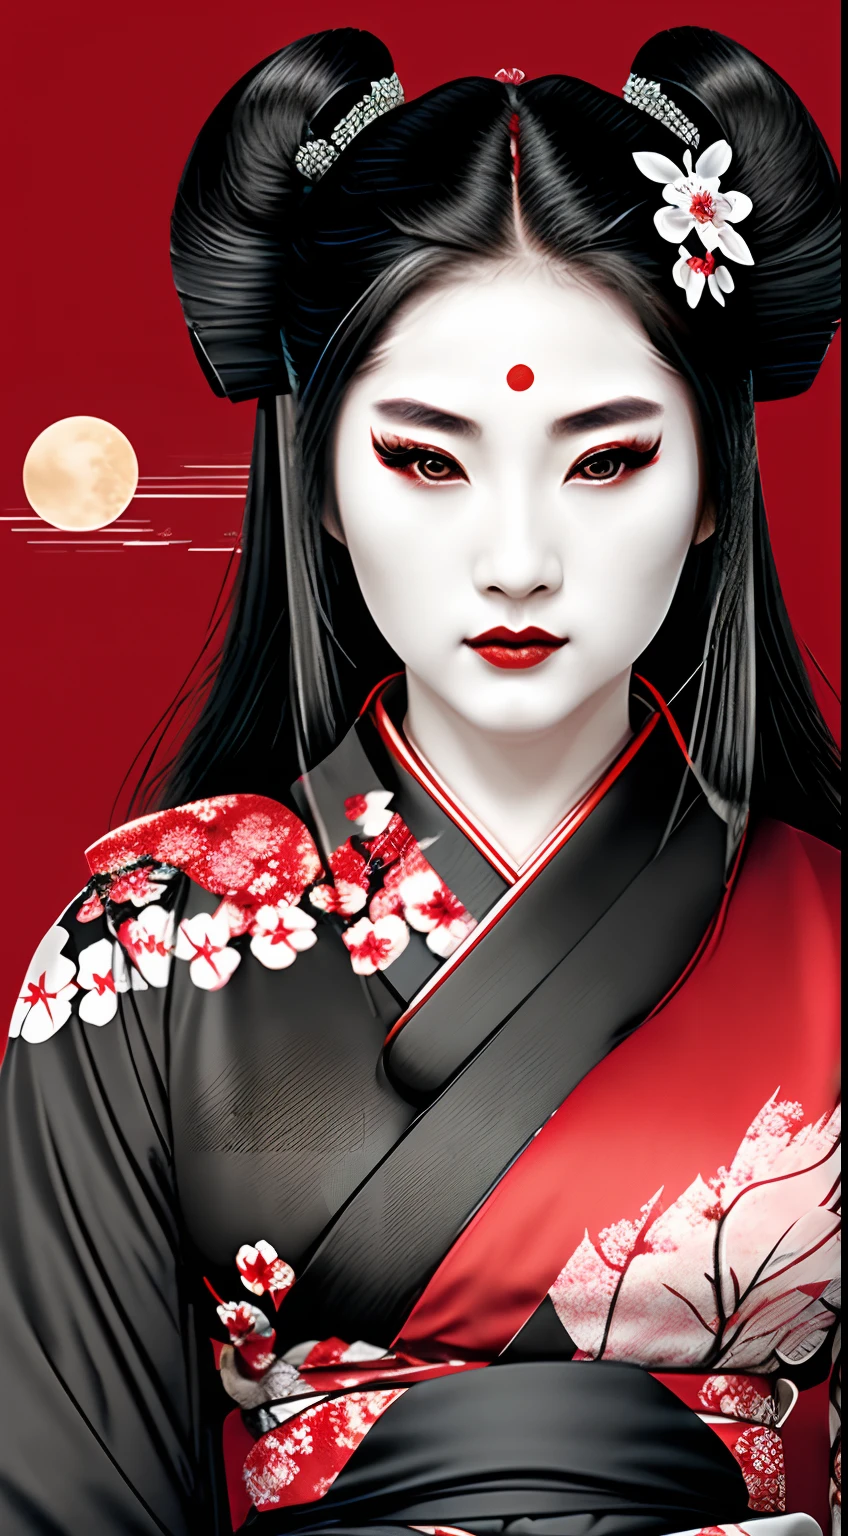 الجيشا الساموراي أنثى المحاربة, احمر و اسود, شعار, شعر أسود, قمر, الوجه الجانبي, لقطات الرأس, أزهار الكرز على الشعر, ارتداء الكيمونو الأسود